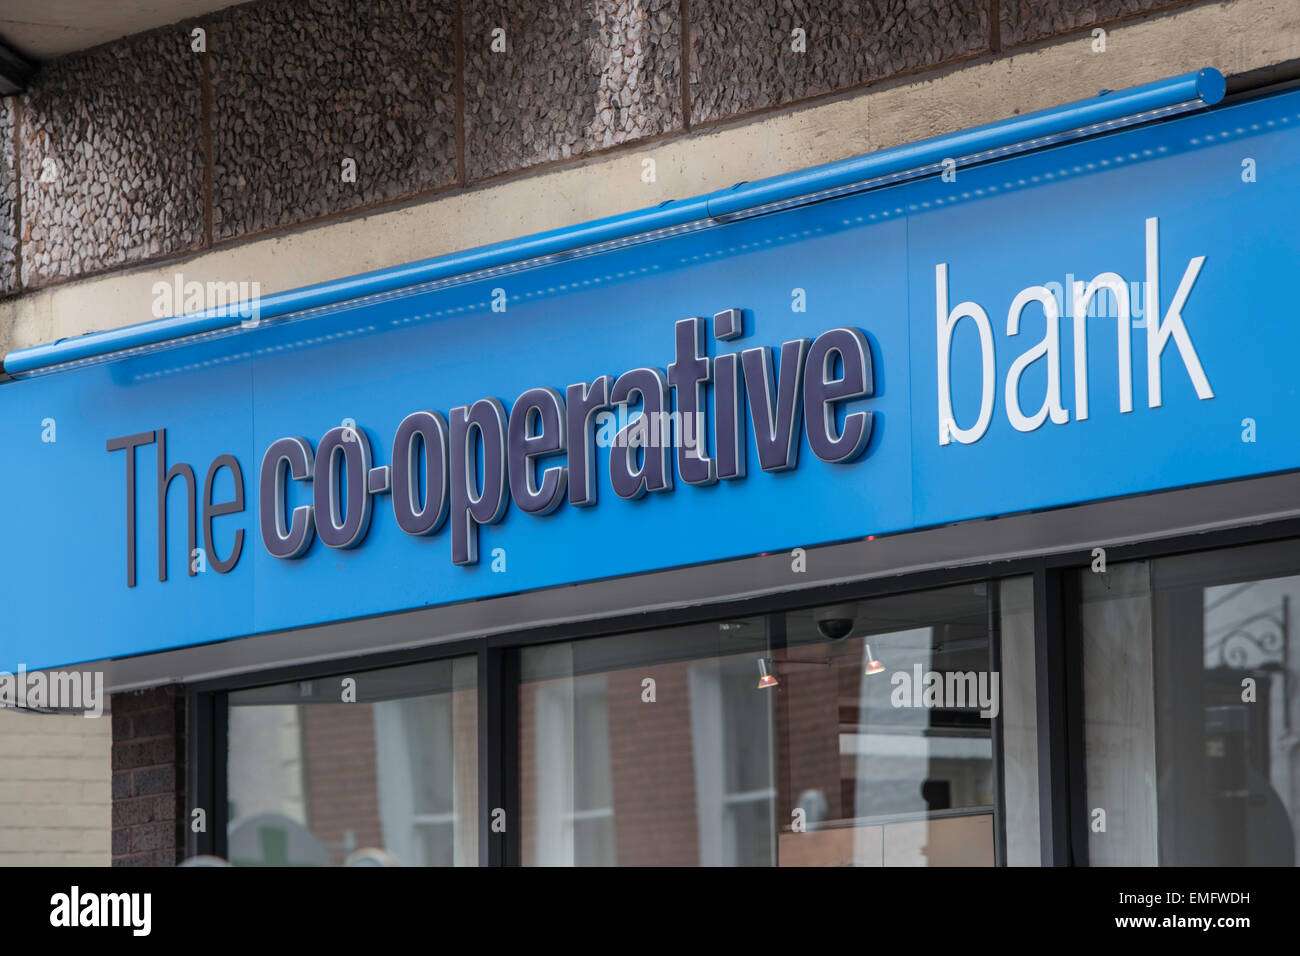 La cooperativa bancaria High street branch, Inglaterra, Reino Unido. Foto de stock